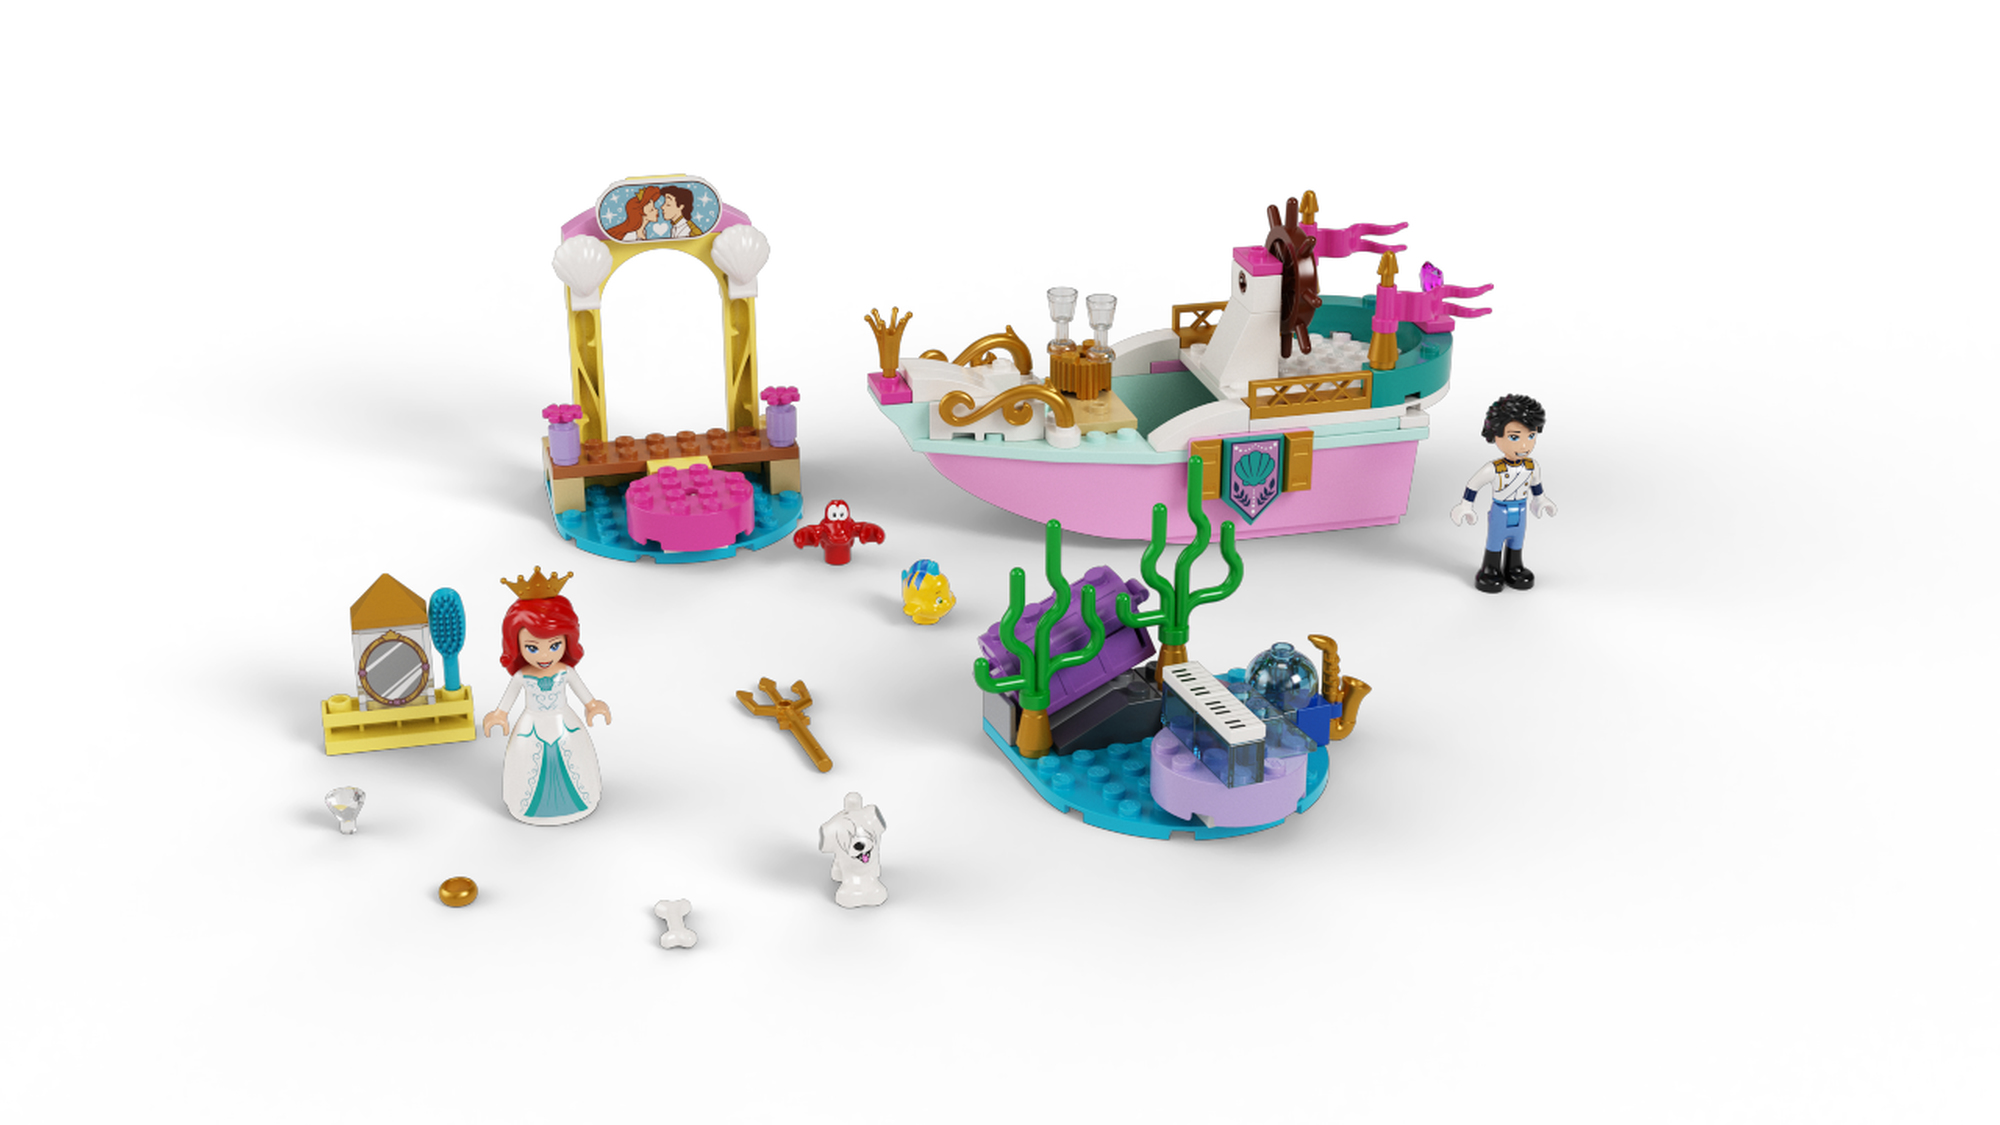 Lego Disney Princess 43191 Barco De Ceremonias De Ariel Multicolor